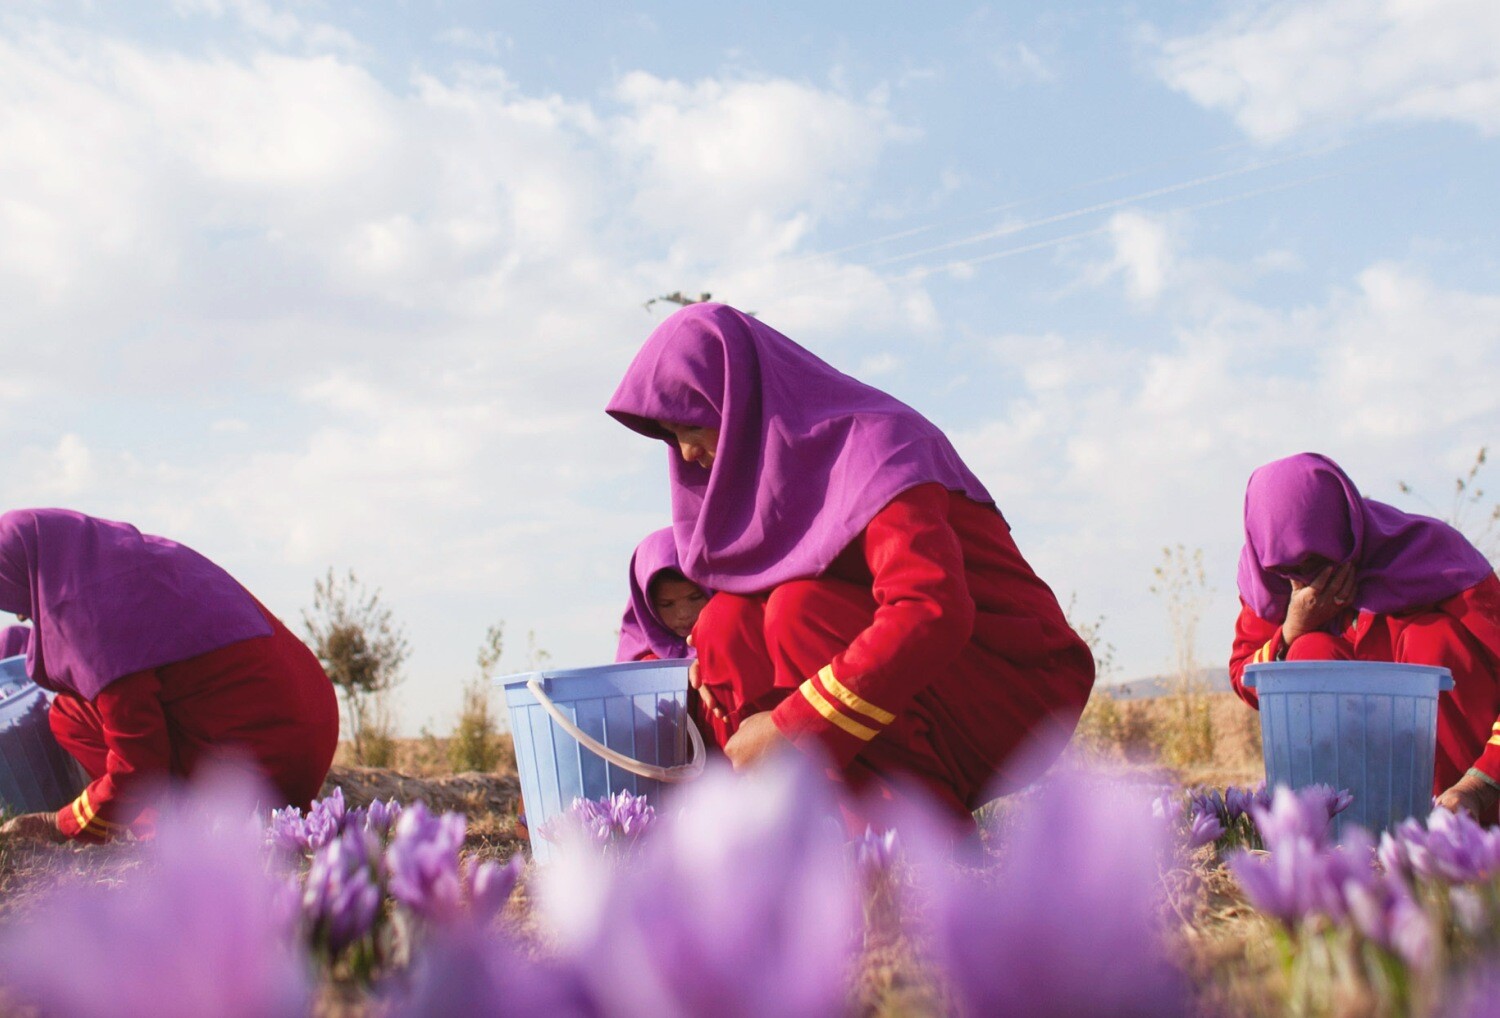 Šafránem za lepší Afghánistán. Značka prémiového koření pomáhá tamním ženám